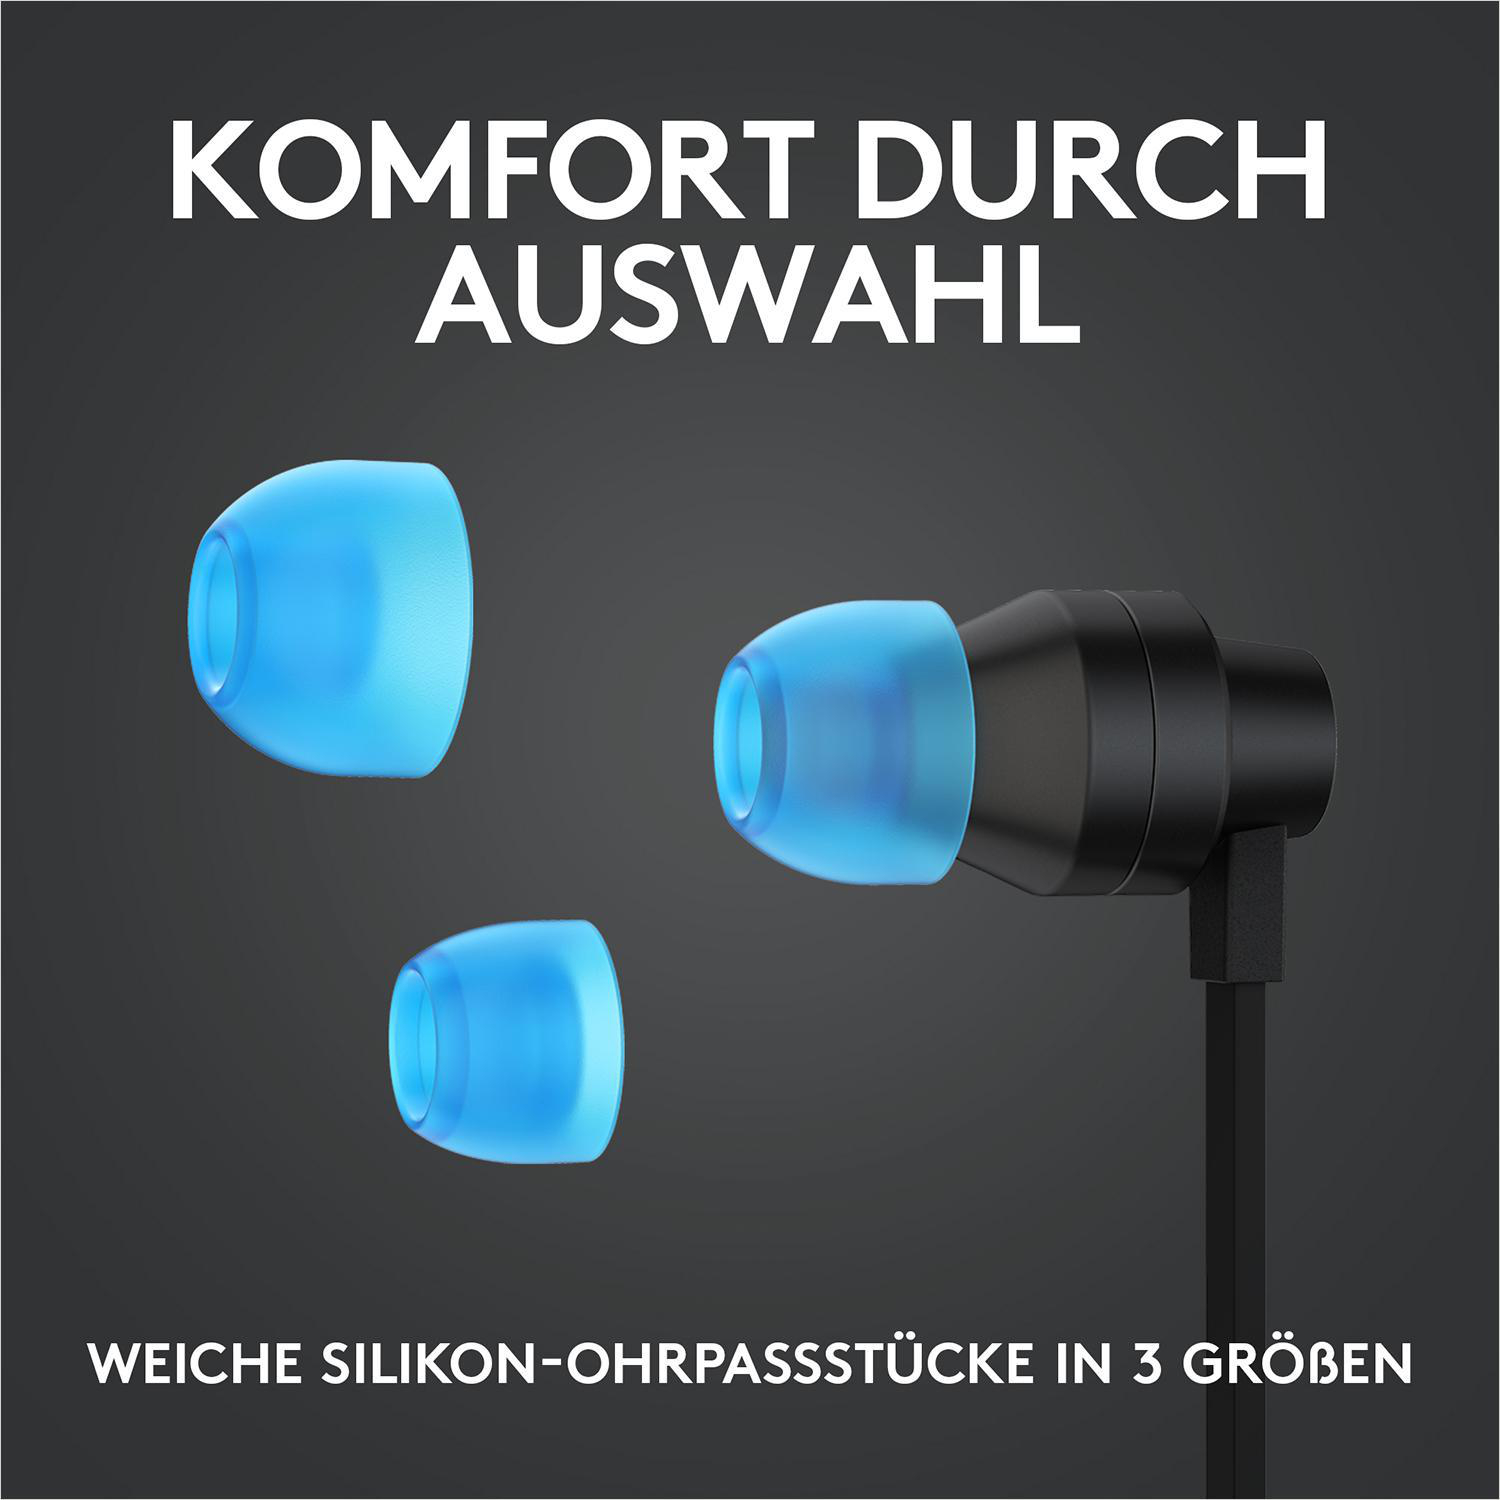 LOGITECH G333, Schwarz Headset In-ear Gaming